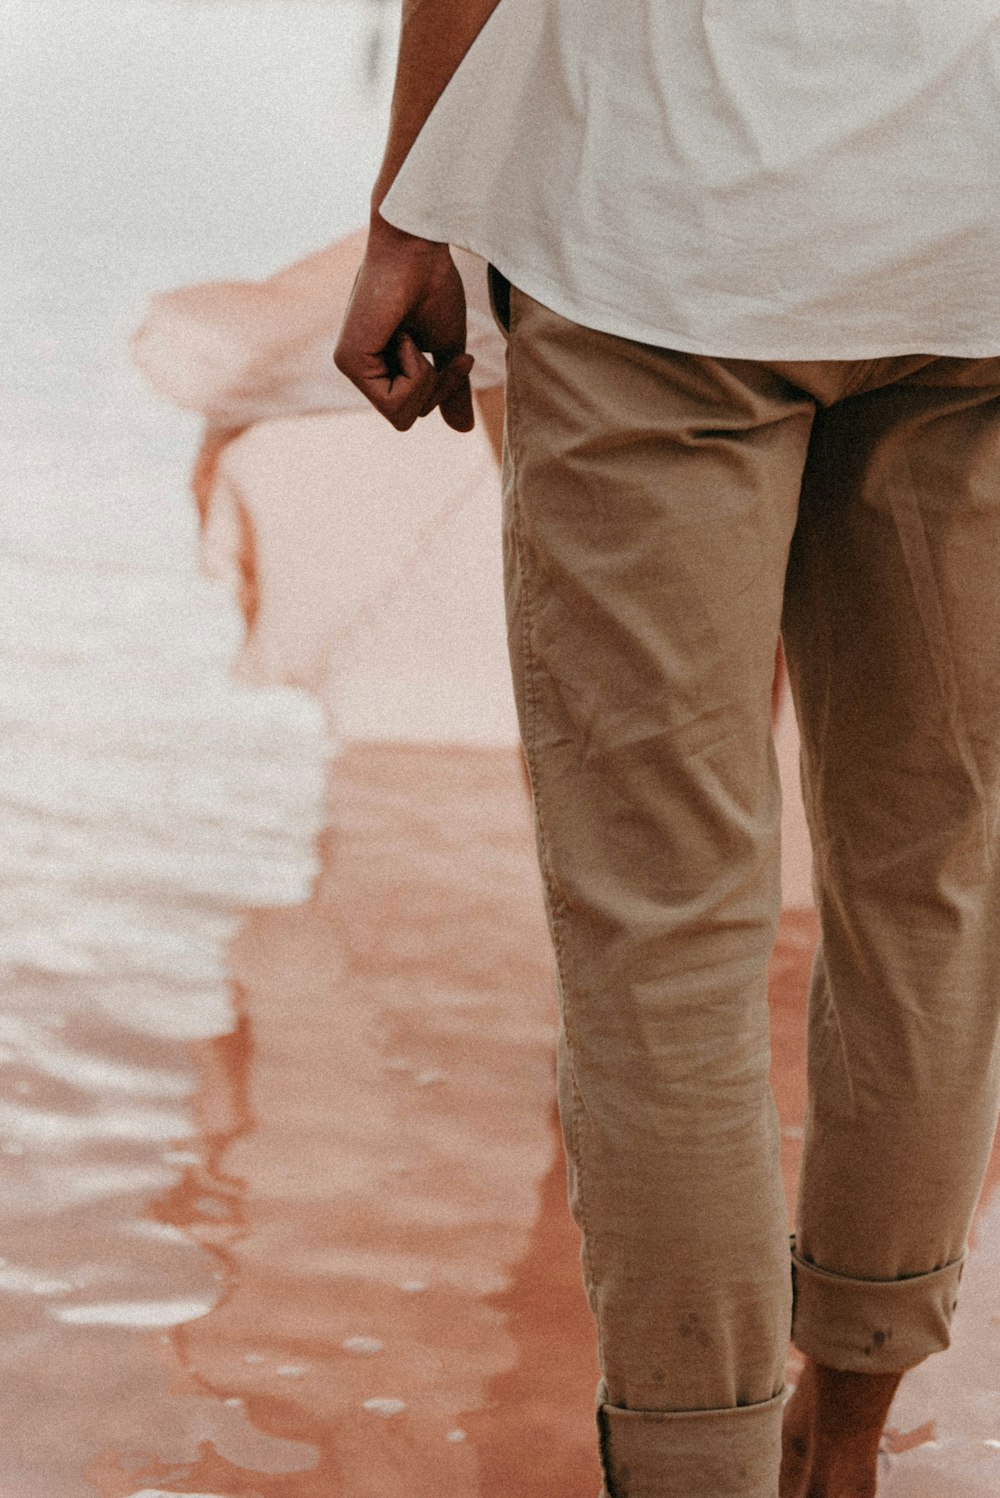 Un uomo che cammina nell'acqua tenendo un ombrello